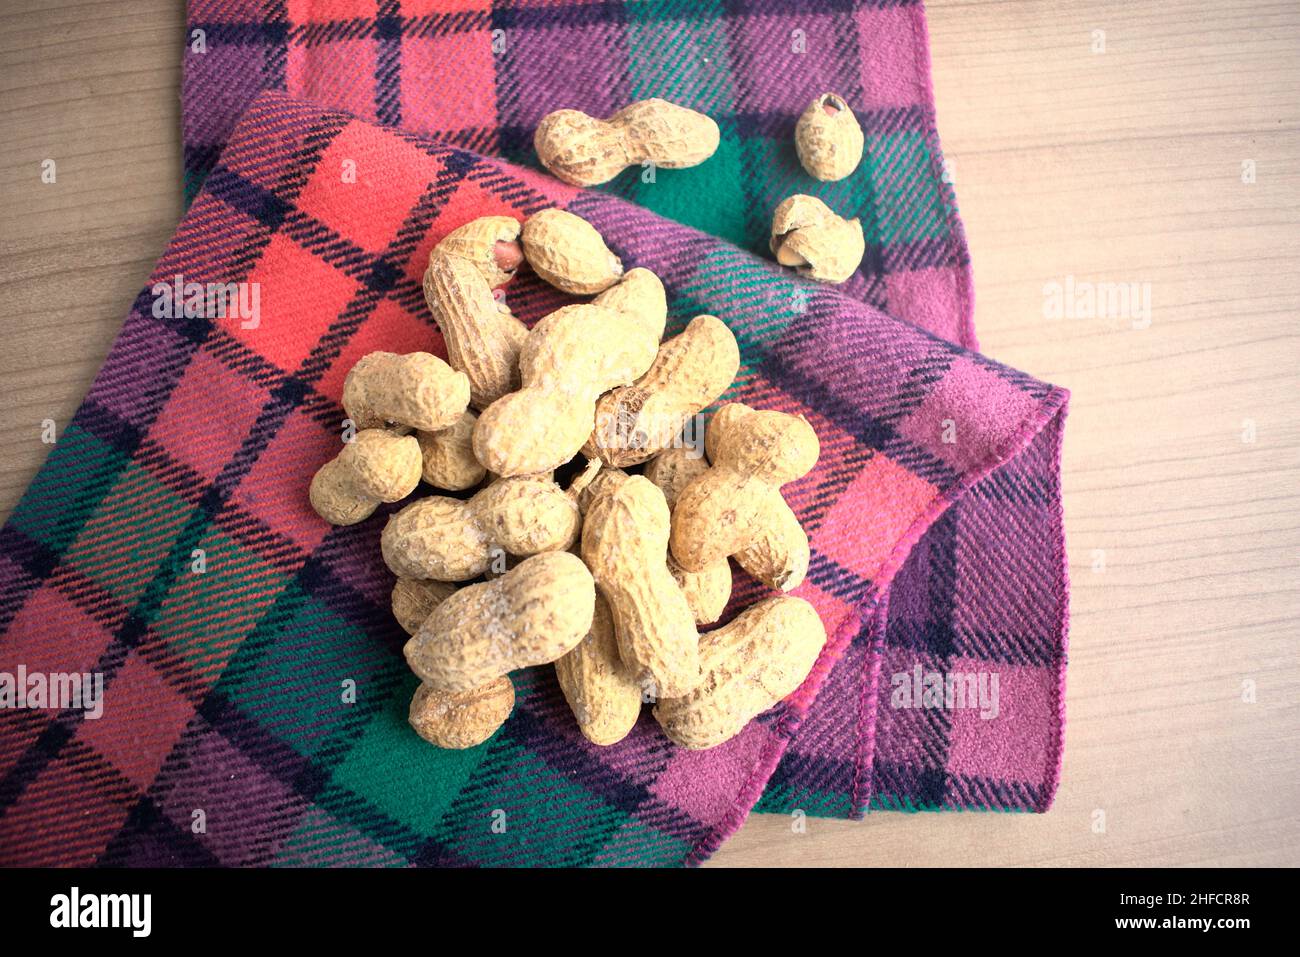 Erdnüsse auf einer bunten Serviette auf einem beigen Tisch. Stockfoto